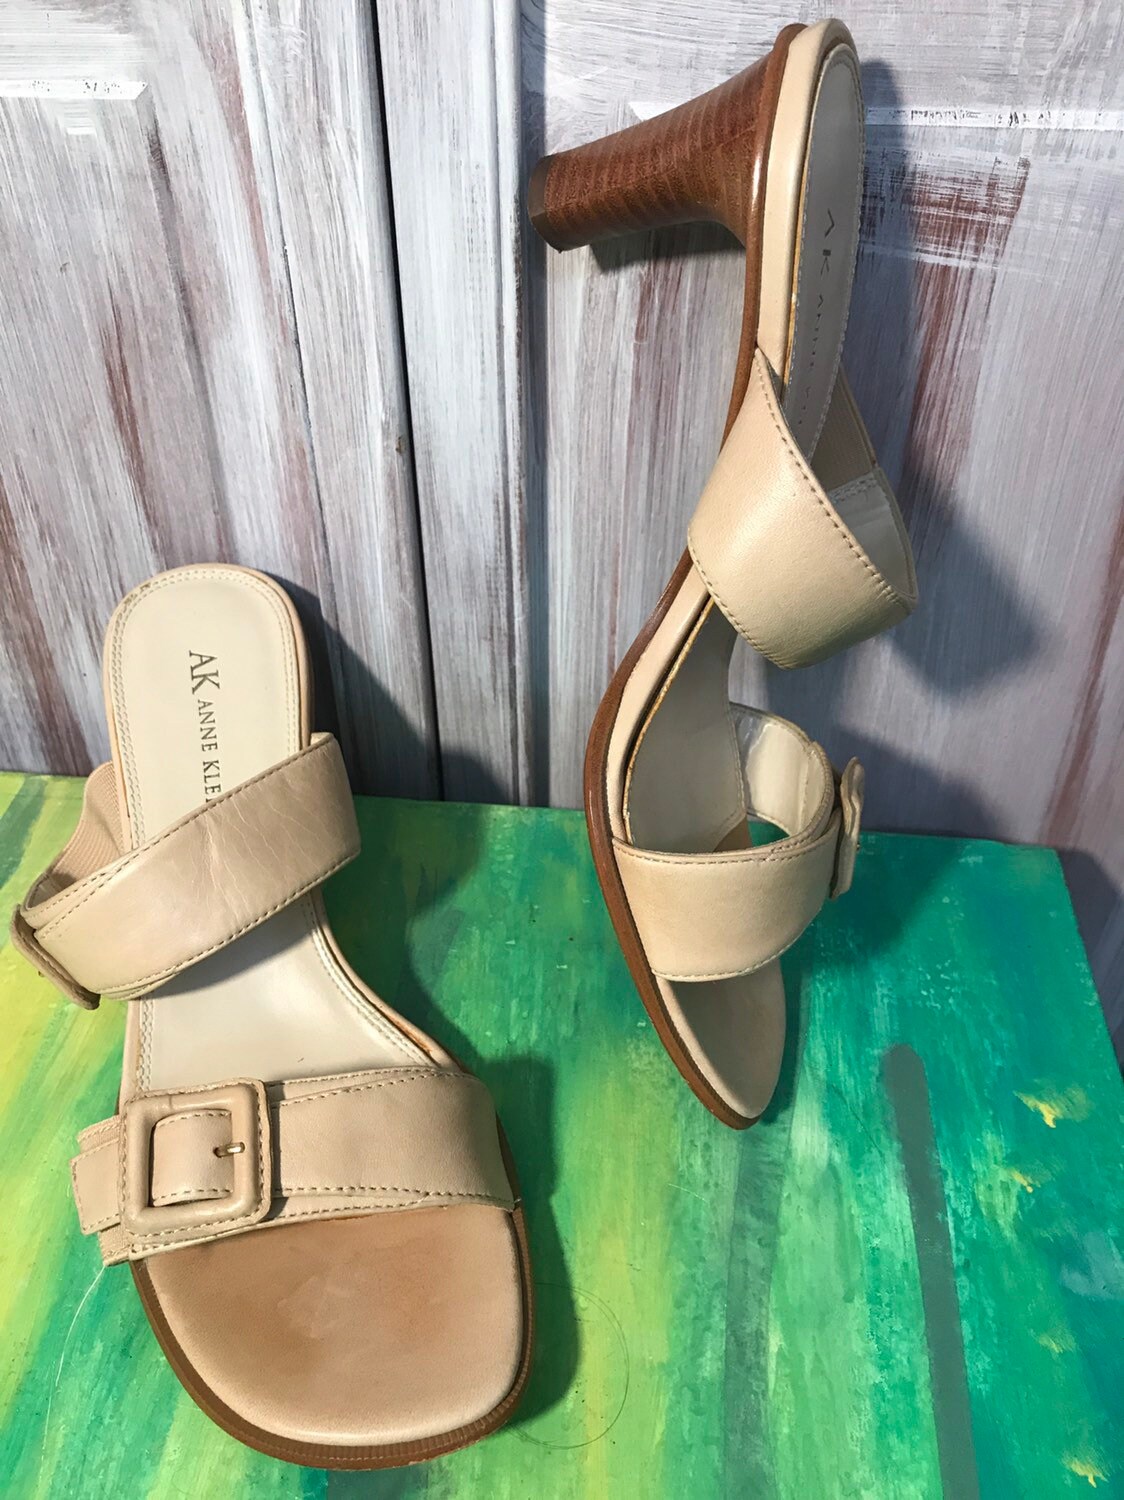 Udgravning hjemmehørende nedbryder Sandals Sandals Pumps Mule Women's Shoe Vintage - Etsy